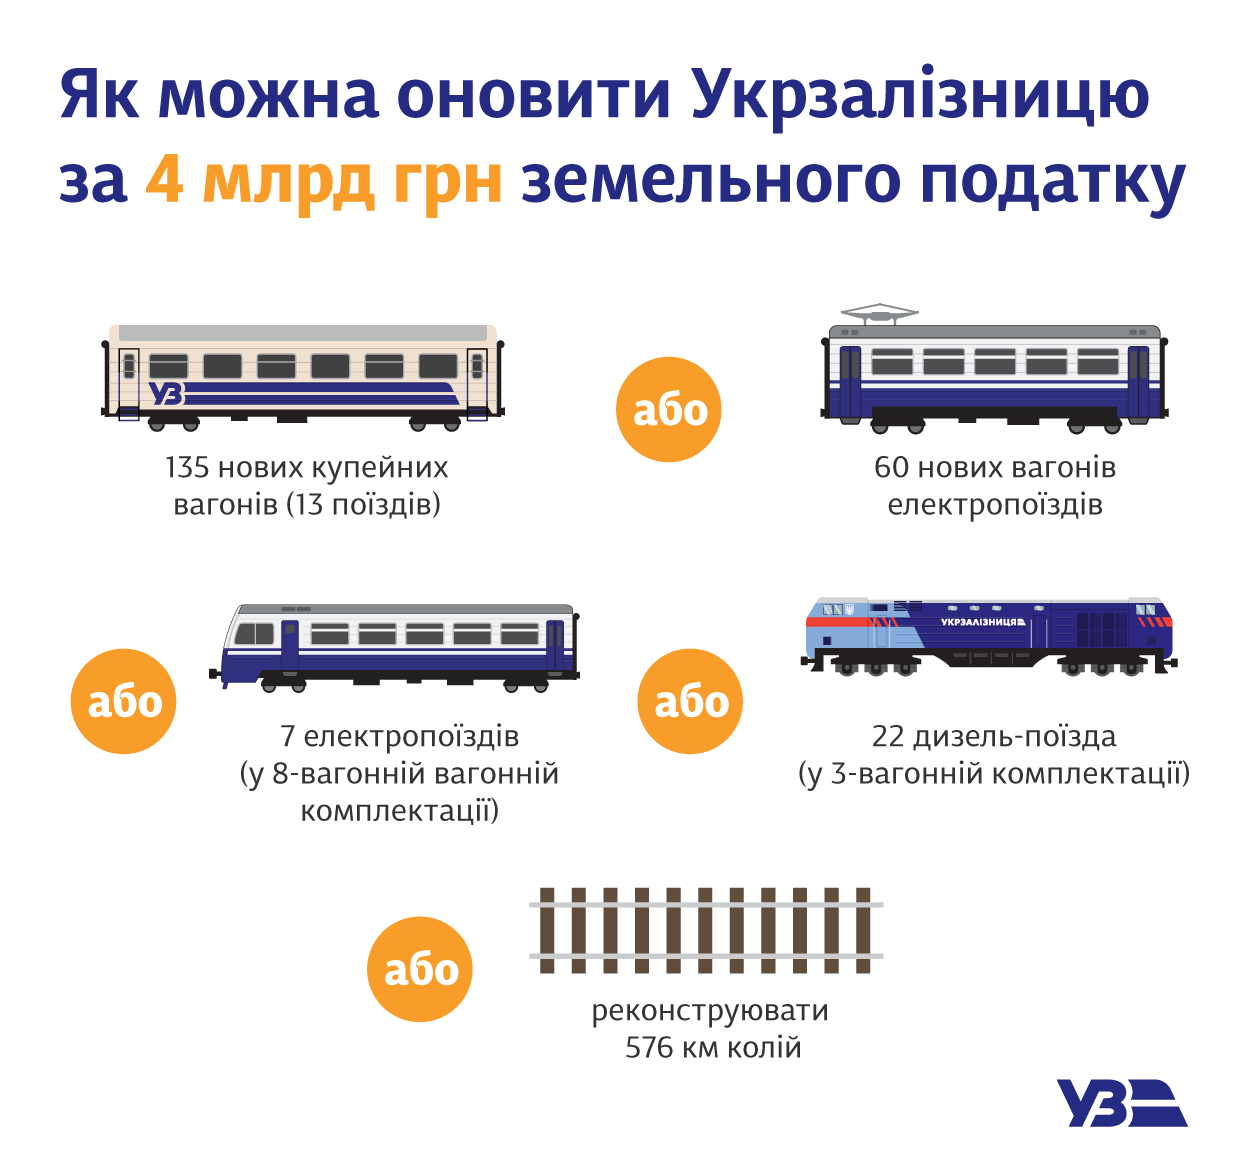 	Укрзализныця может покупать по 135 новых пассажирских вагонов в год вместо уплаты земельного налога